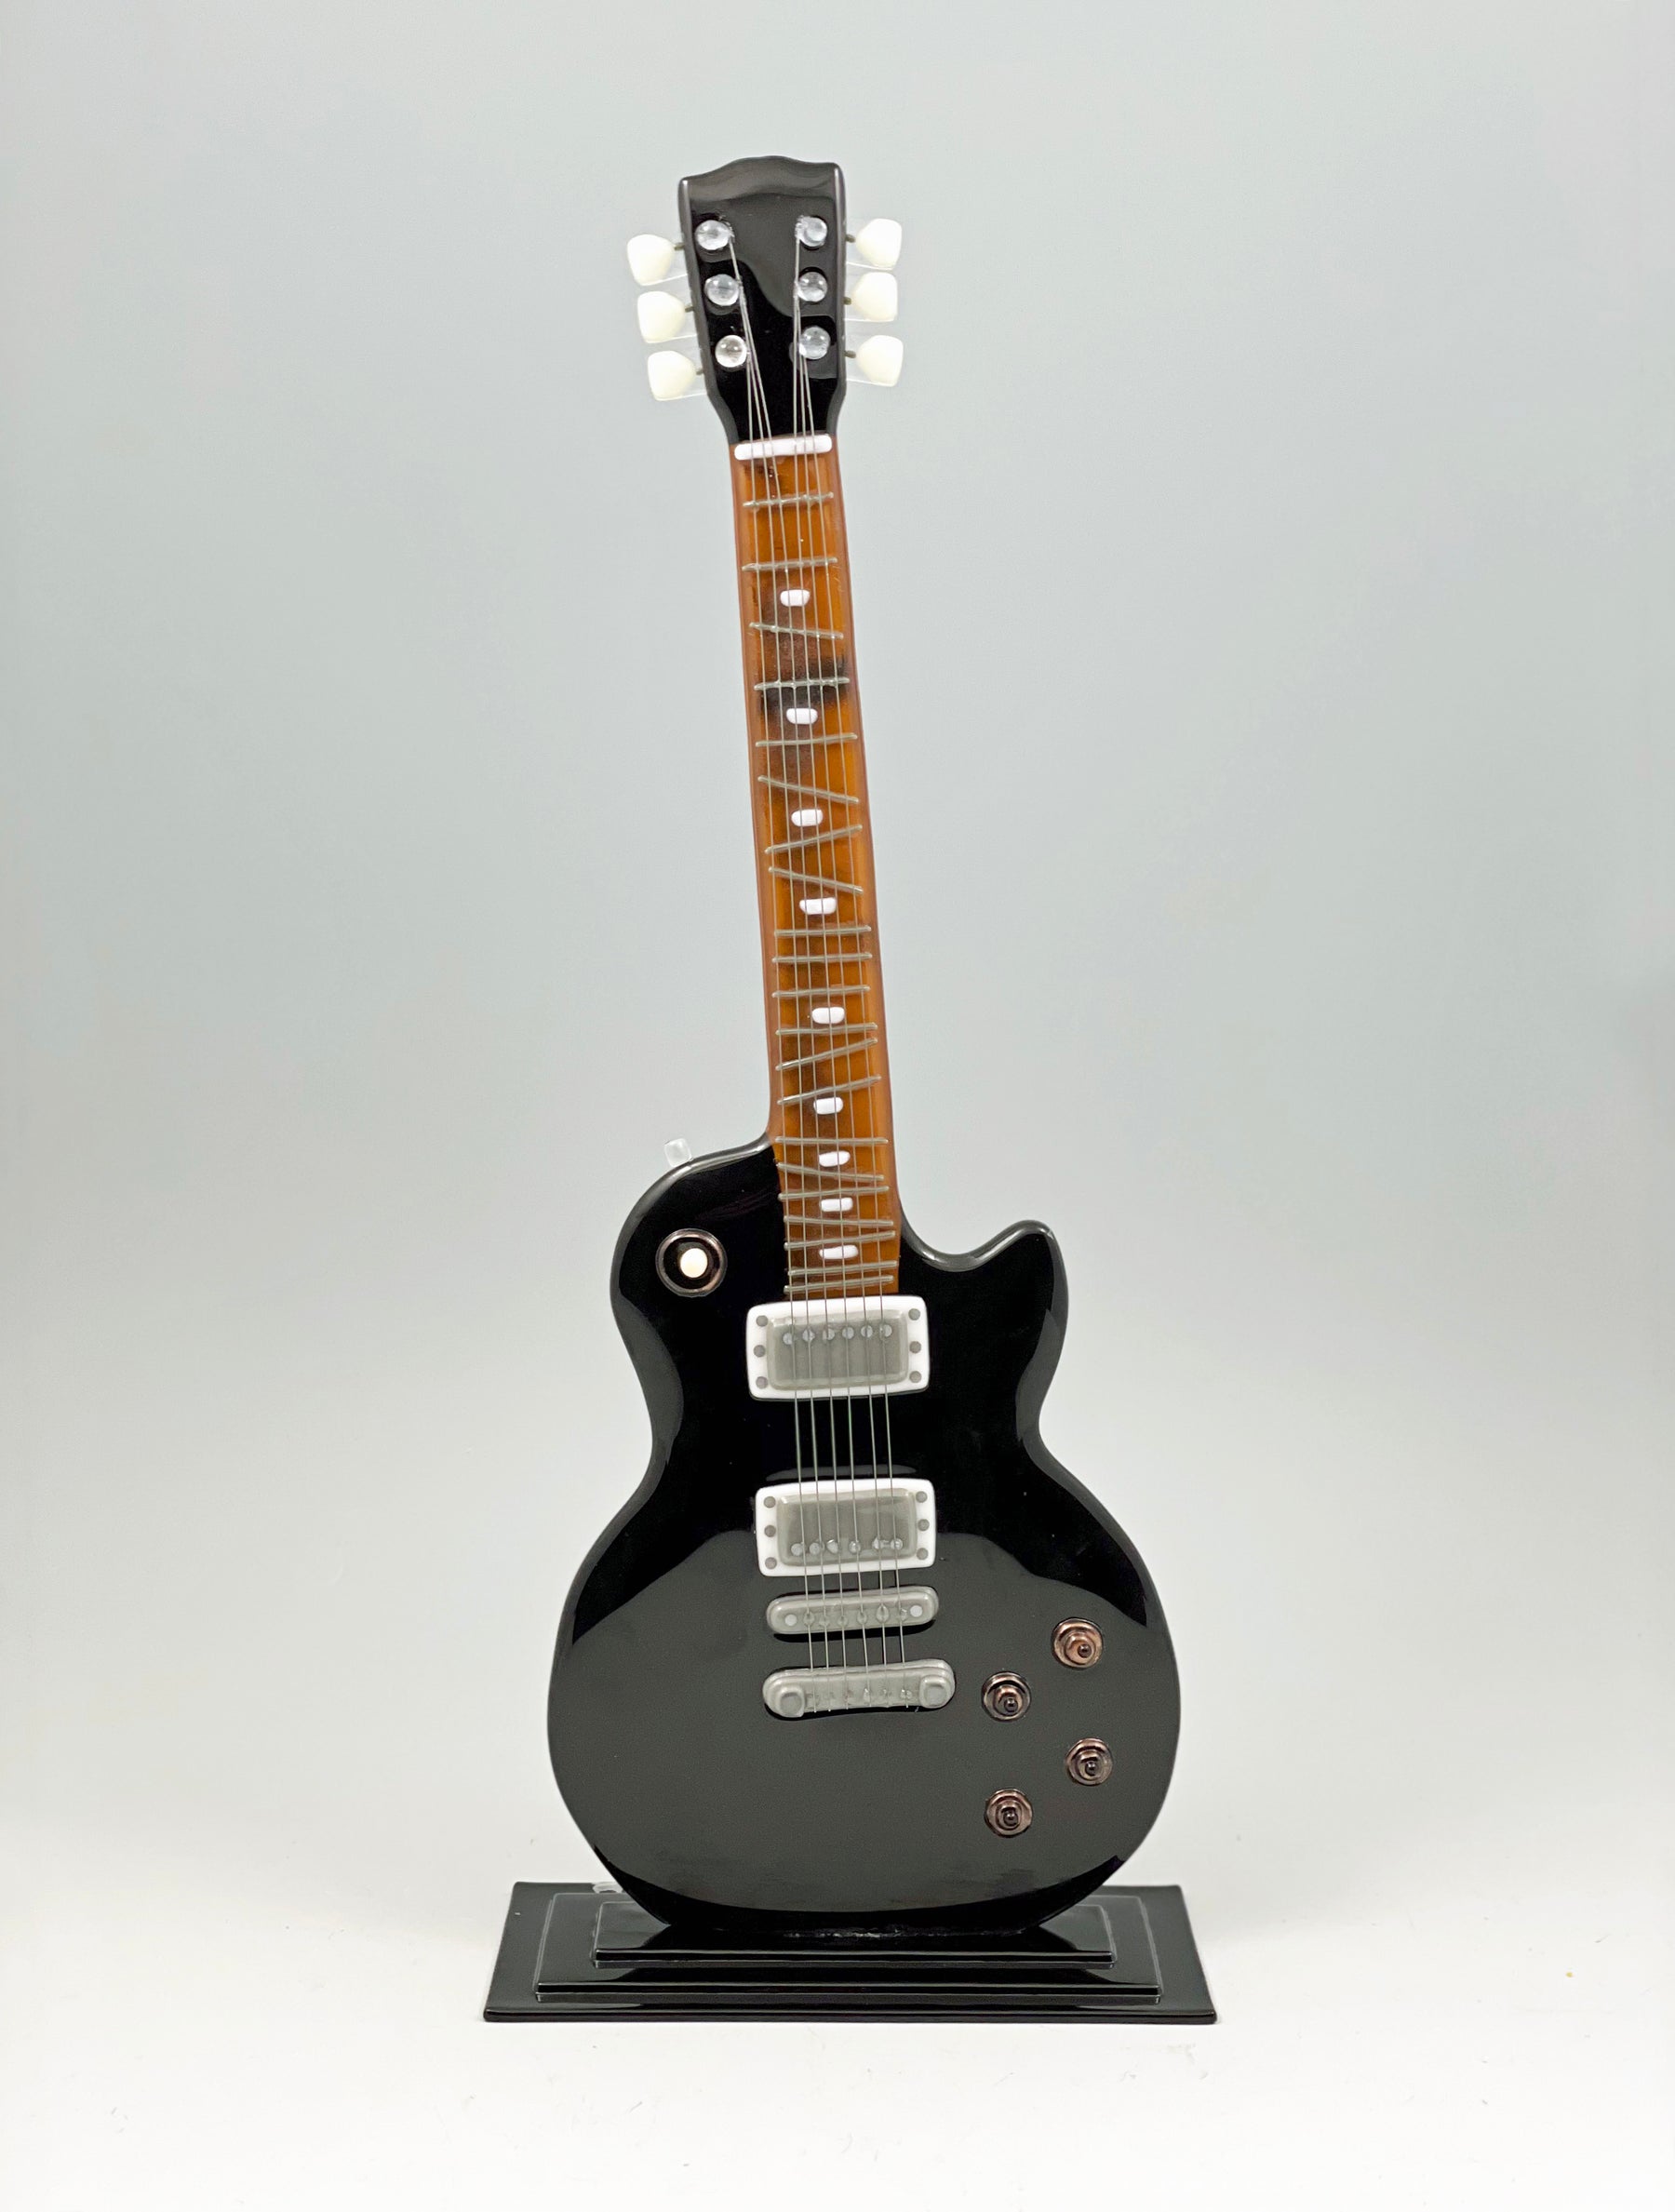 Glass Gibson Les Paul Guitar Sculpture